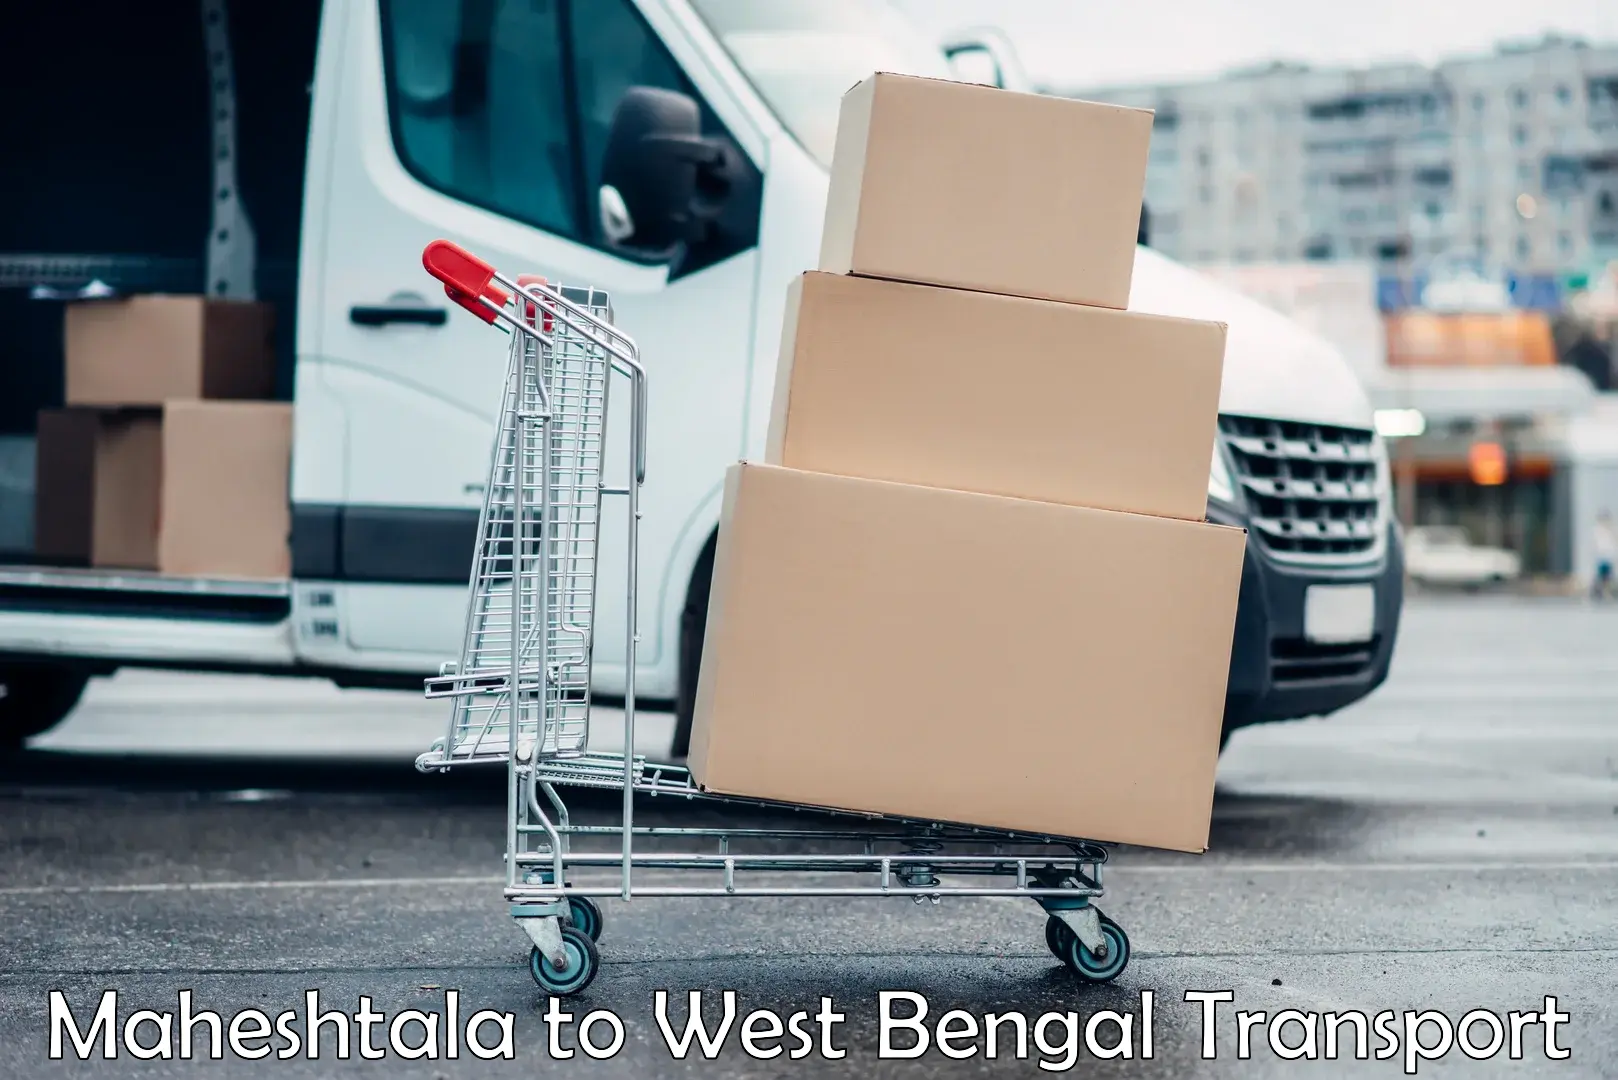 Goods delivery service Maheshtala to Dalkhola